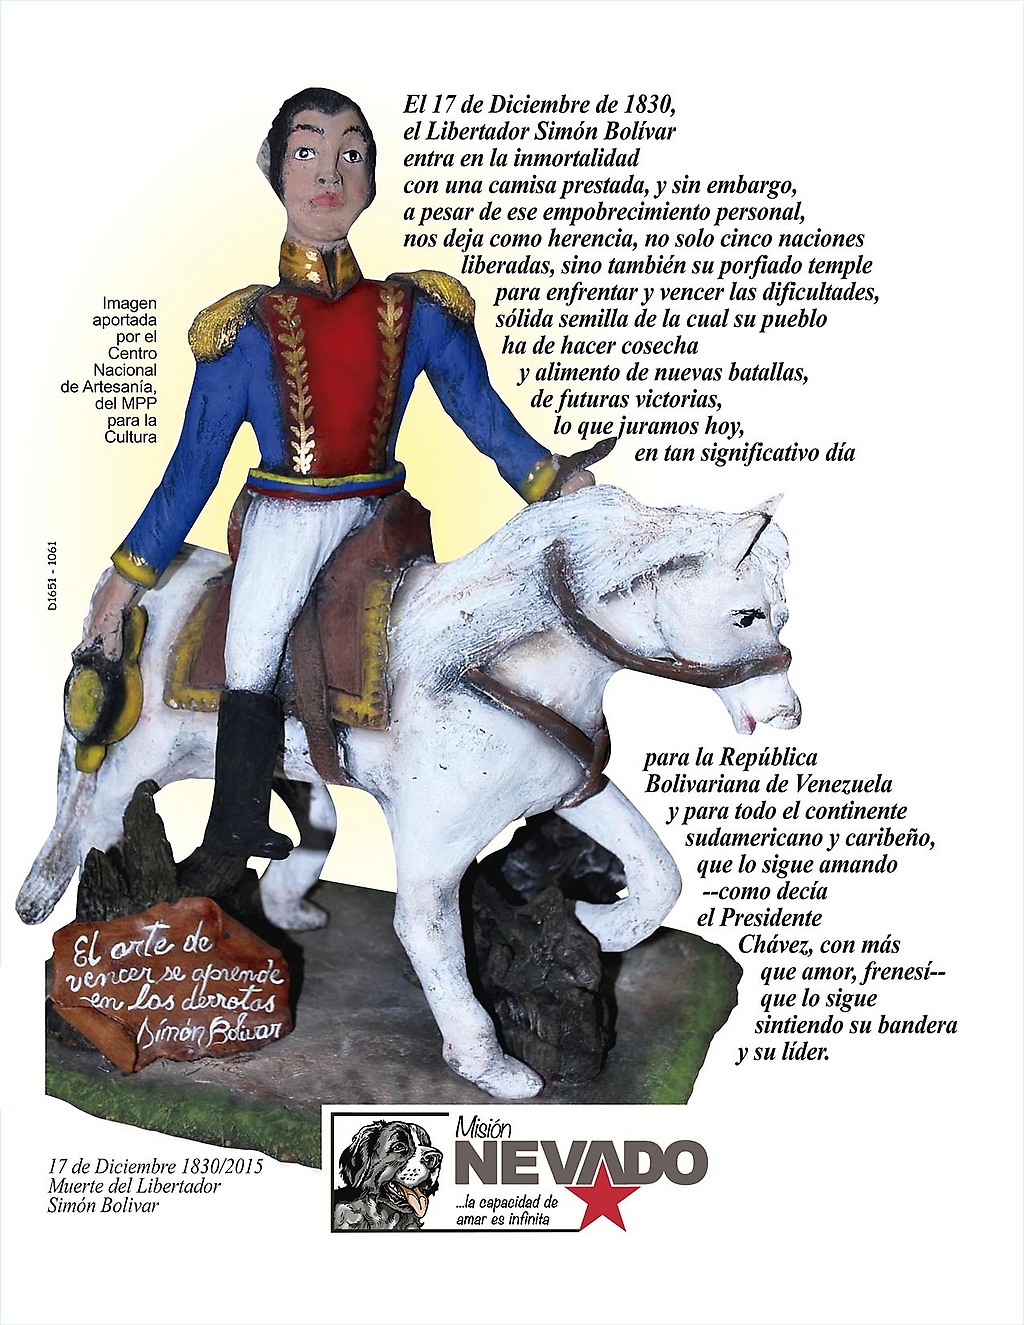 Artesanía de Reina de Molina, de San Pablo, Bailadores. "Simón Bolívar a caballo..." Moldeado en Arcilla.